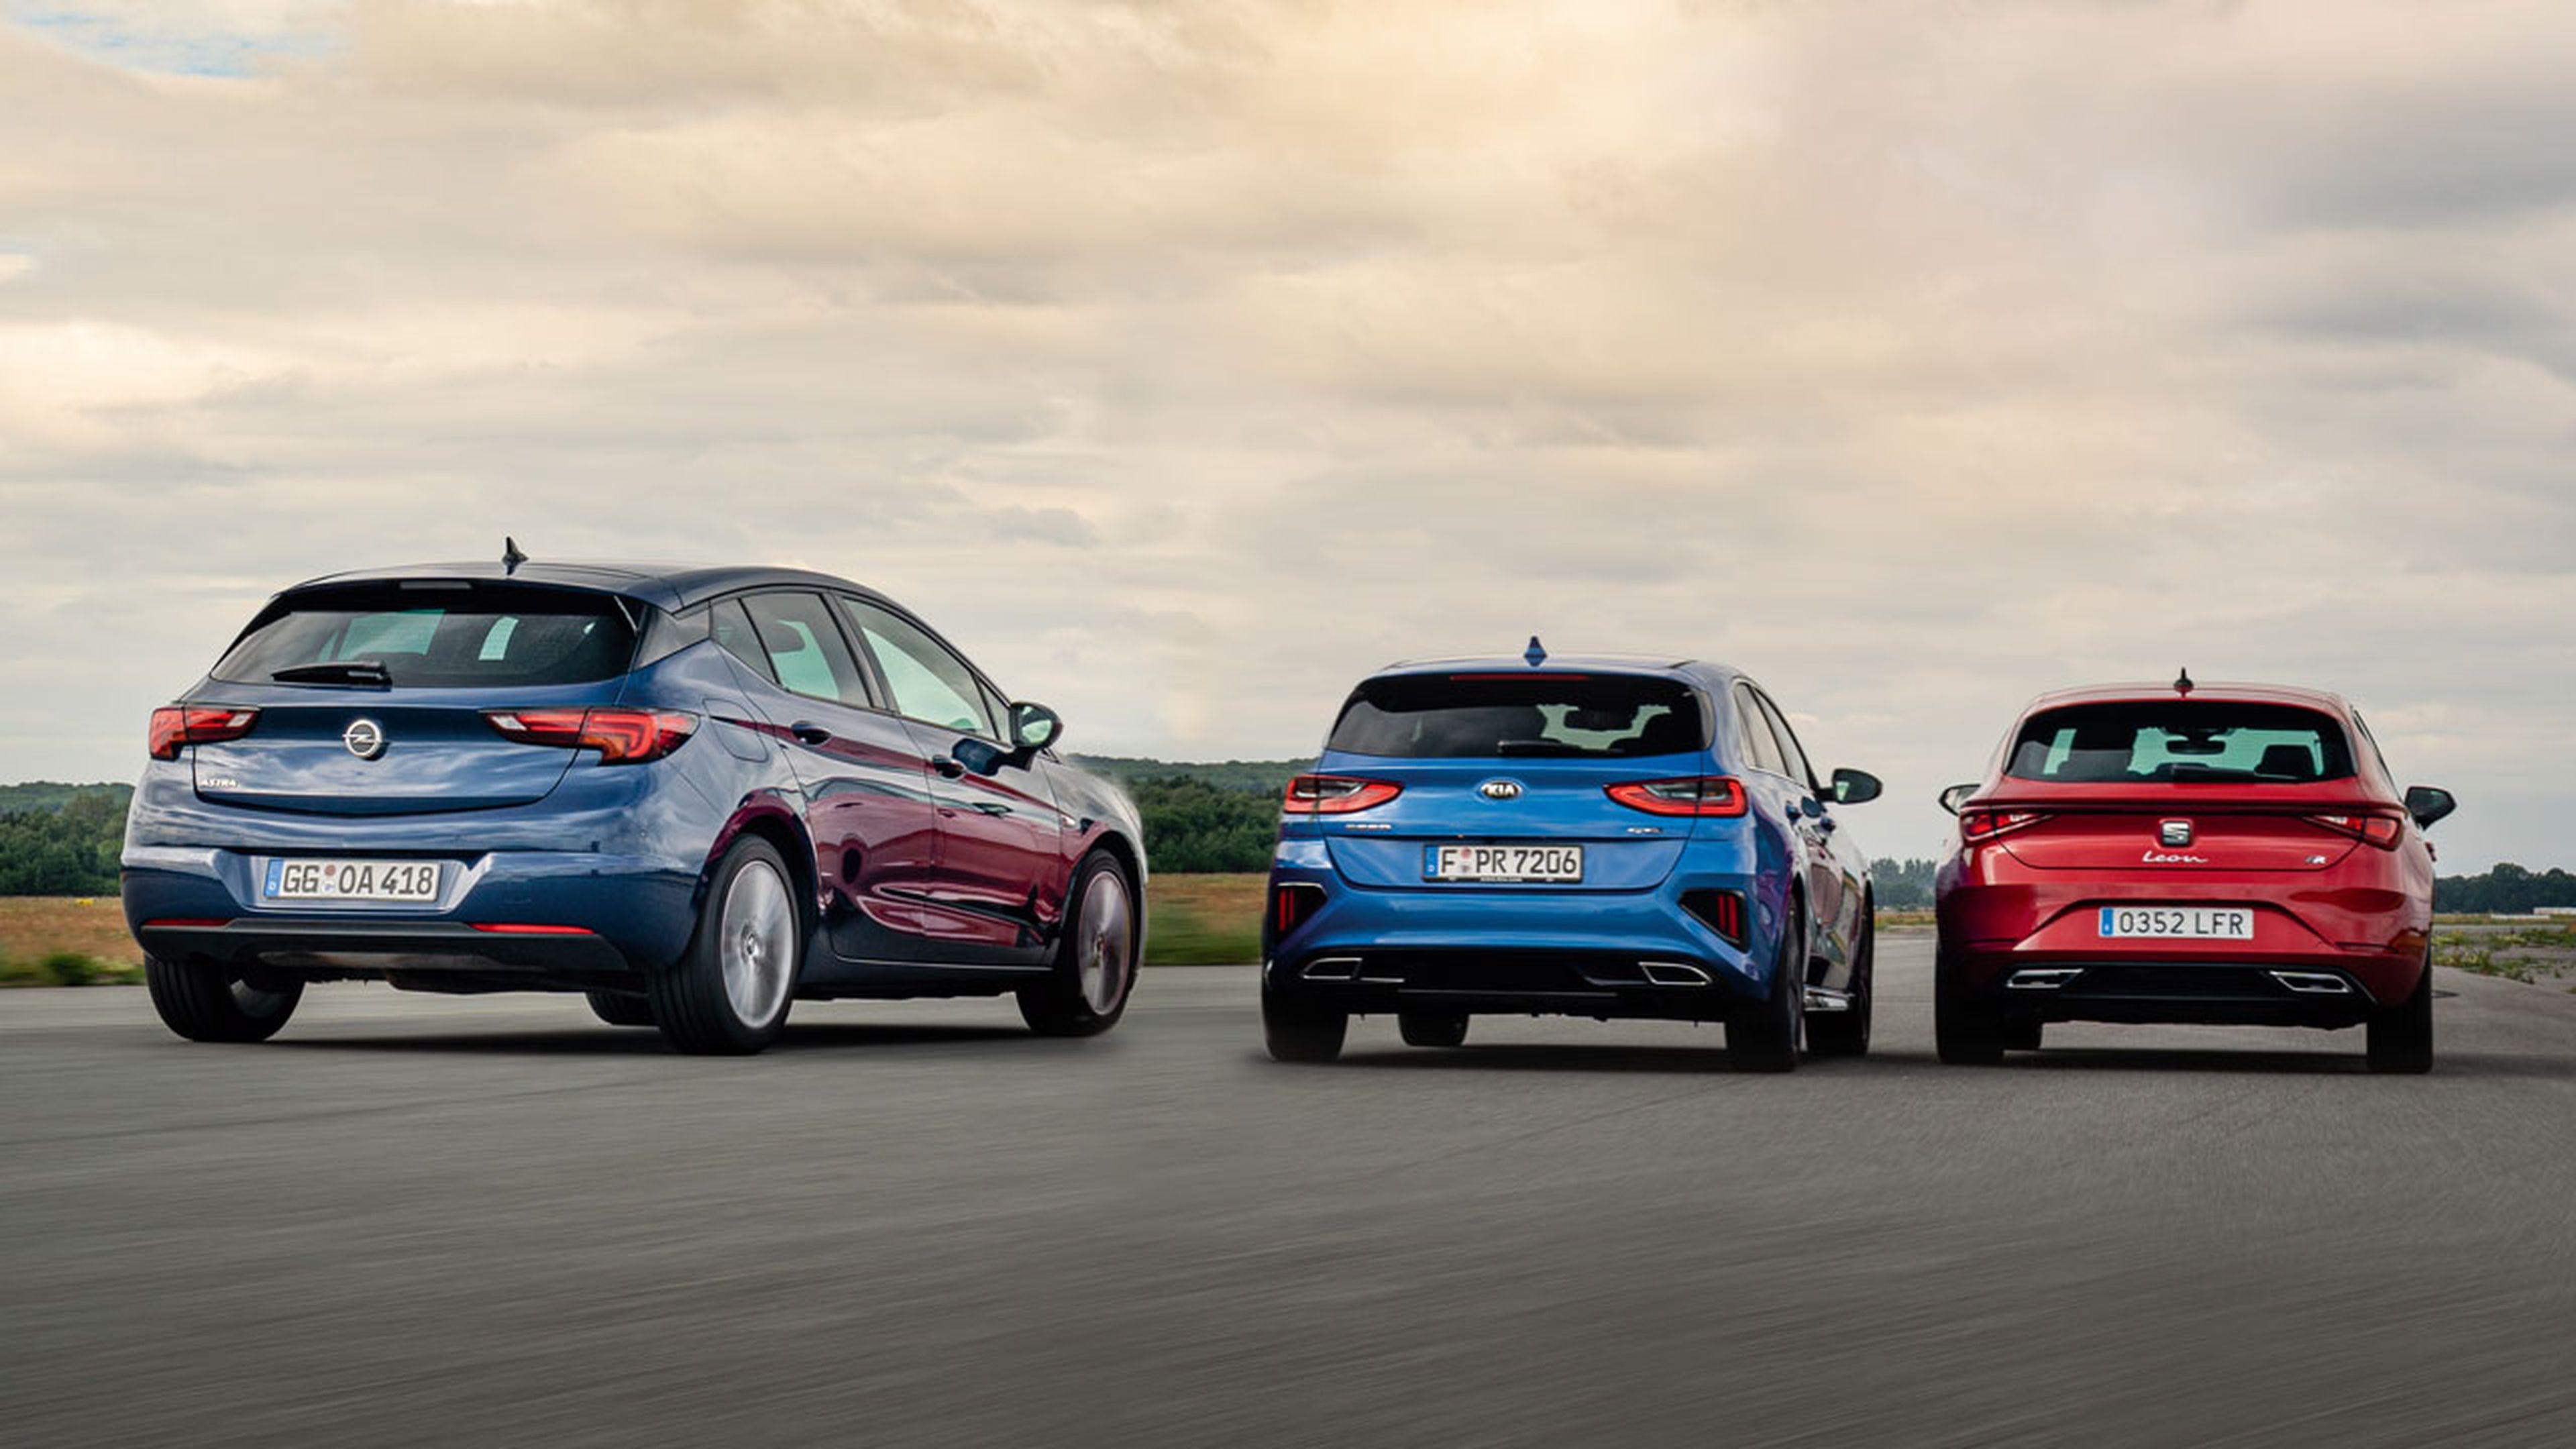 Comparativa: Seat León 2020 contra Kia Ceed y Opel Astra